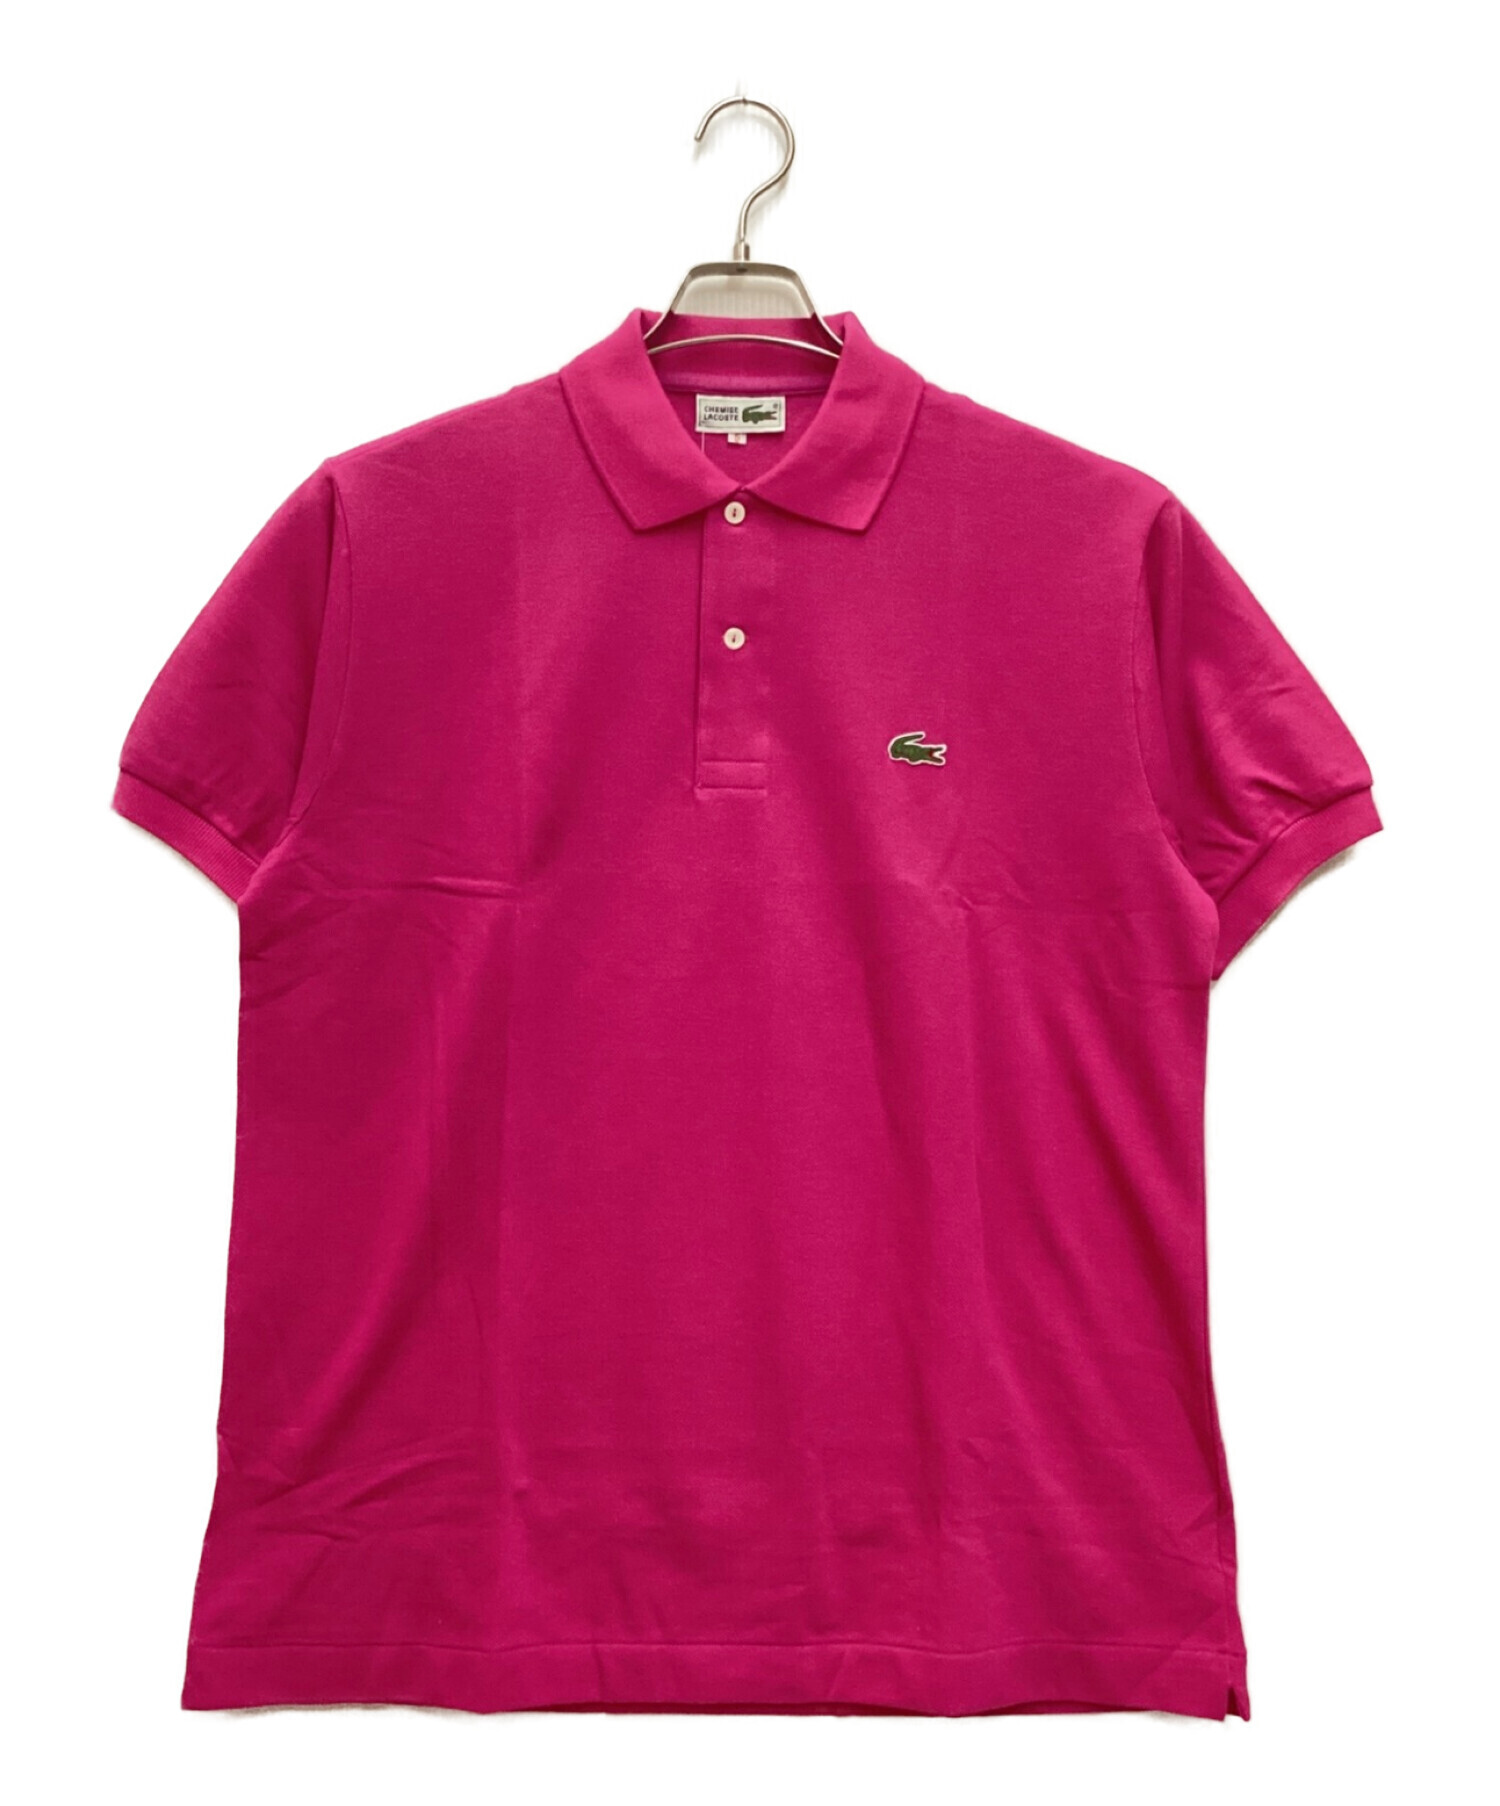 LACOSTE (ラコステ) 90Sポロシャツ ピンク サイズ:LL 未使用品